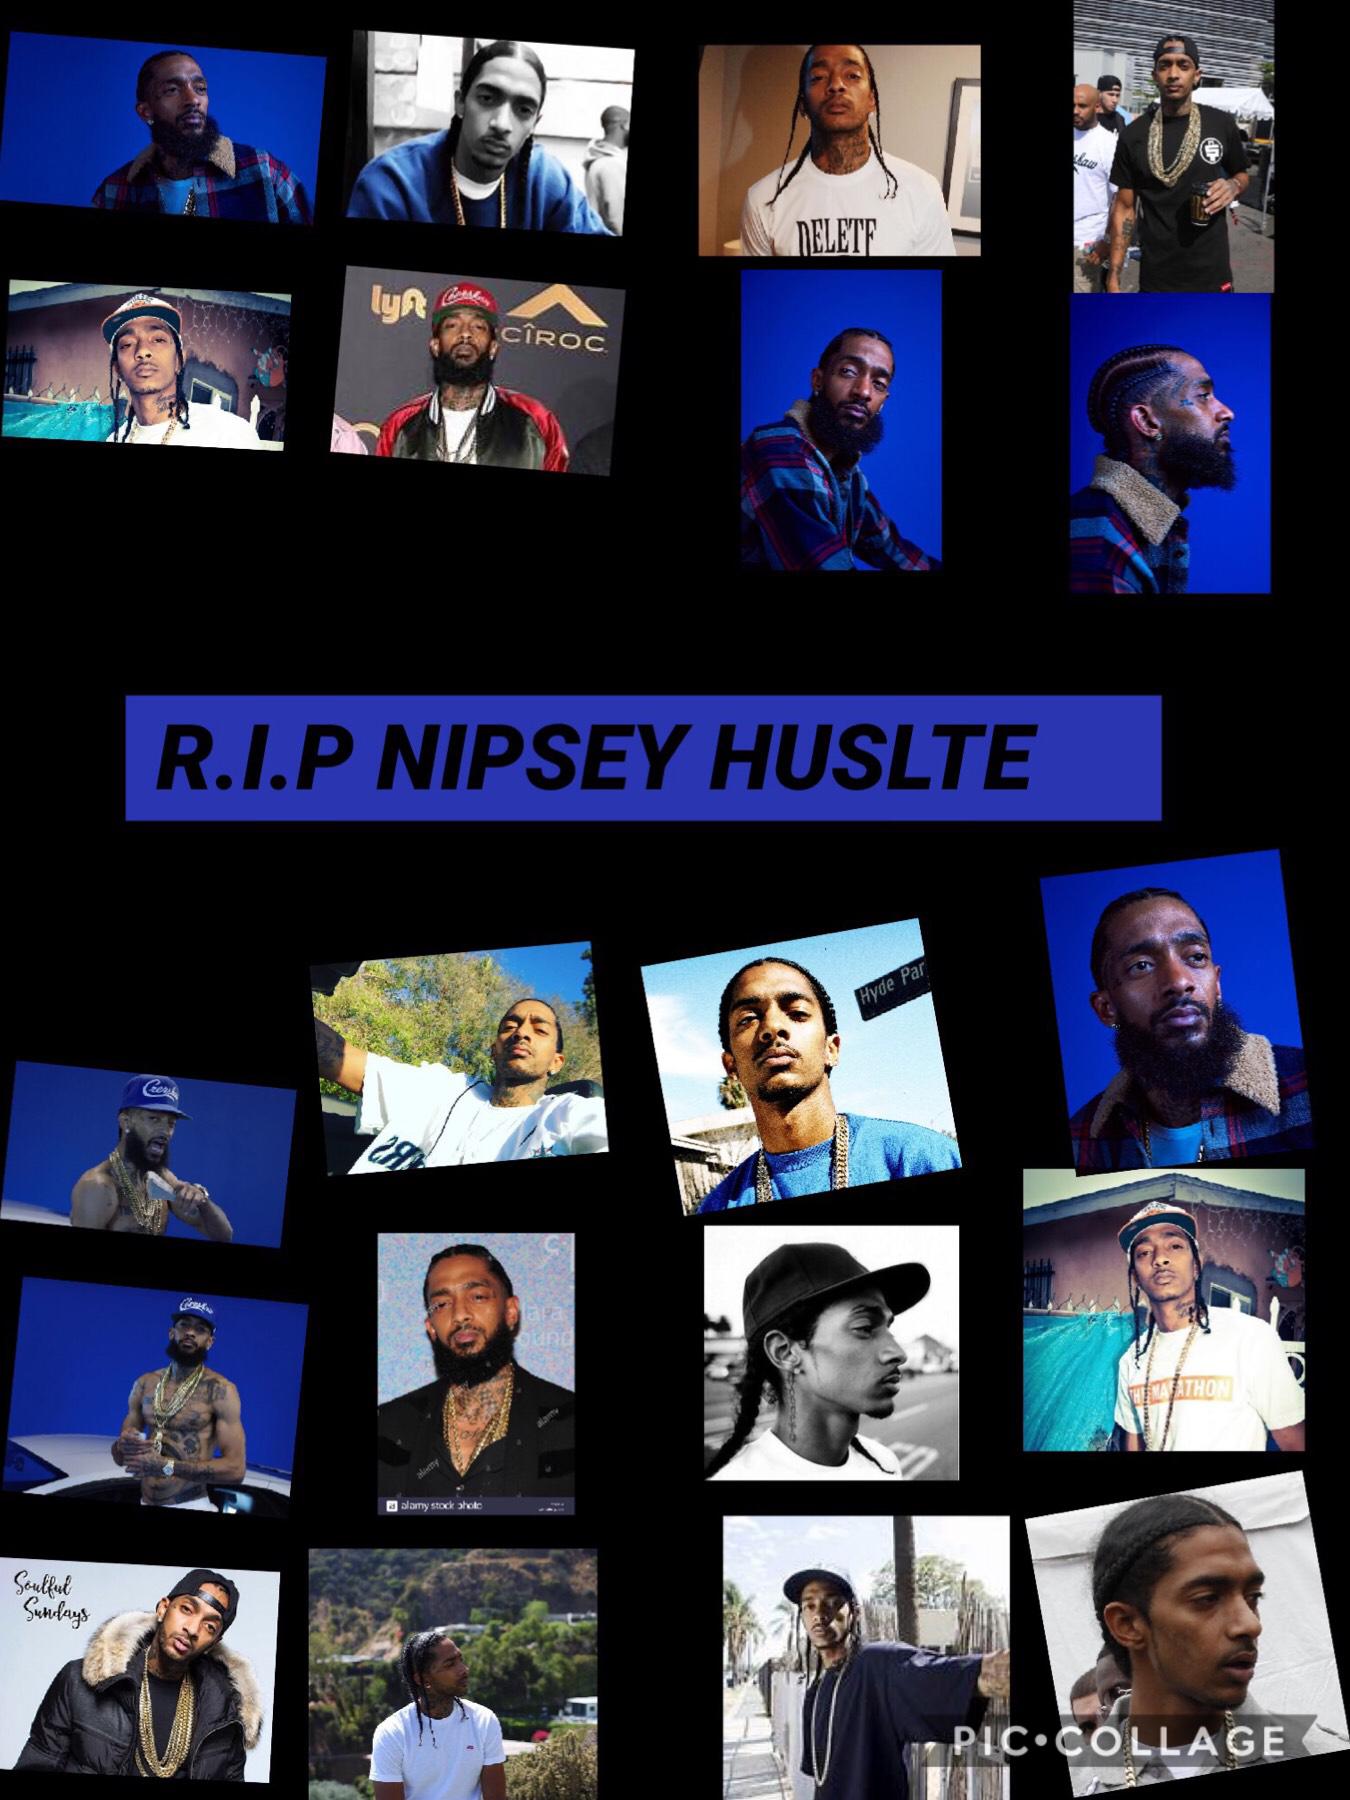 Rip nipsey hustle